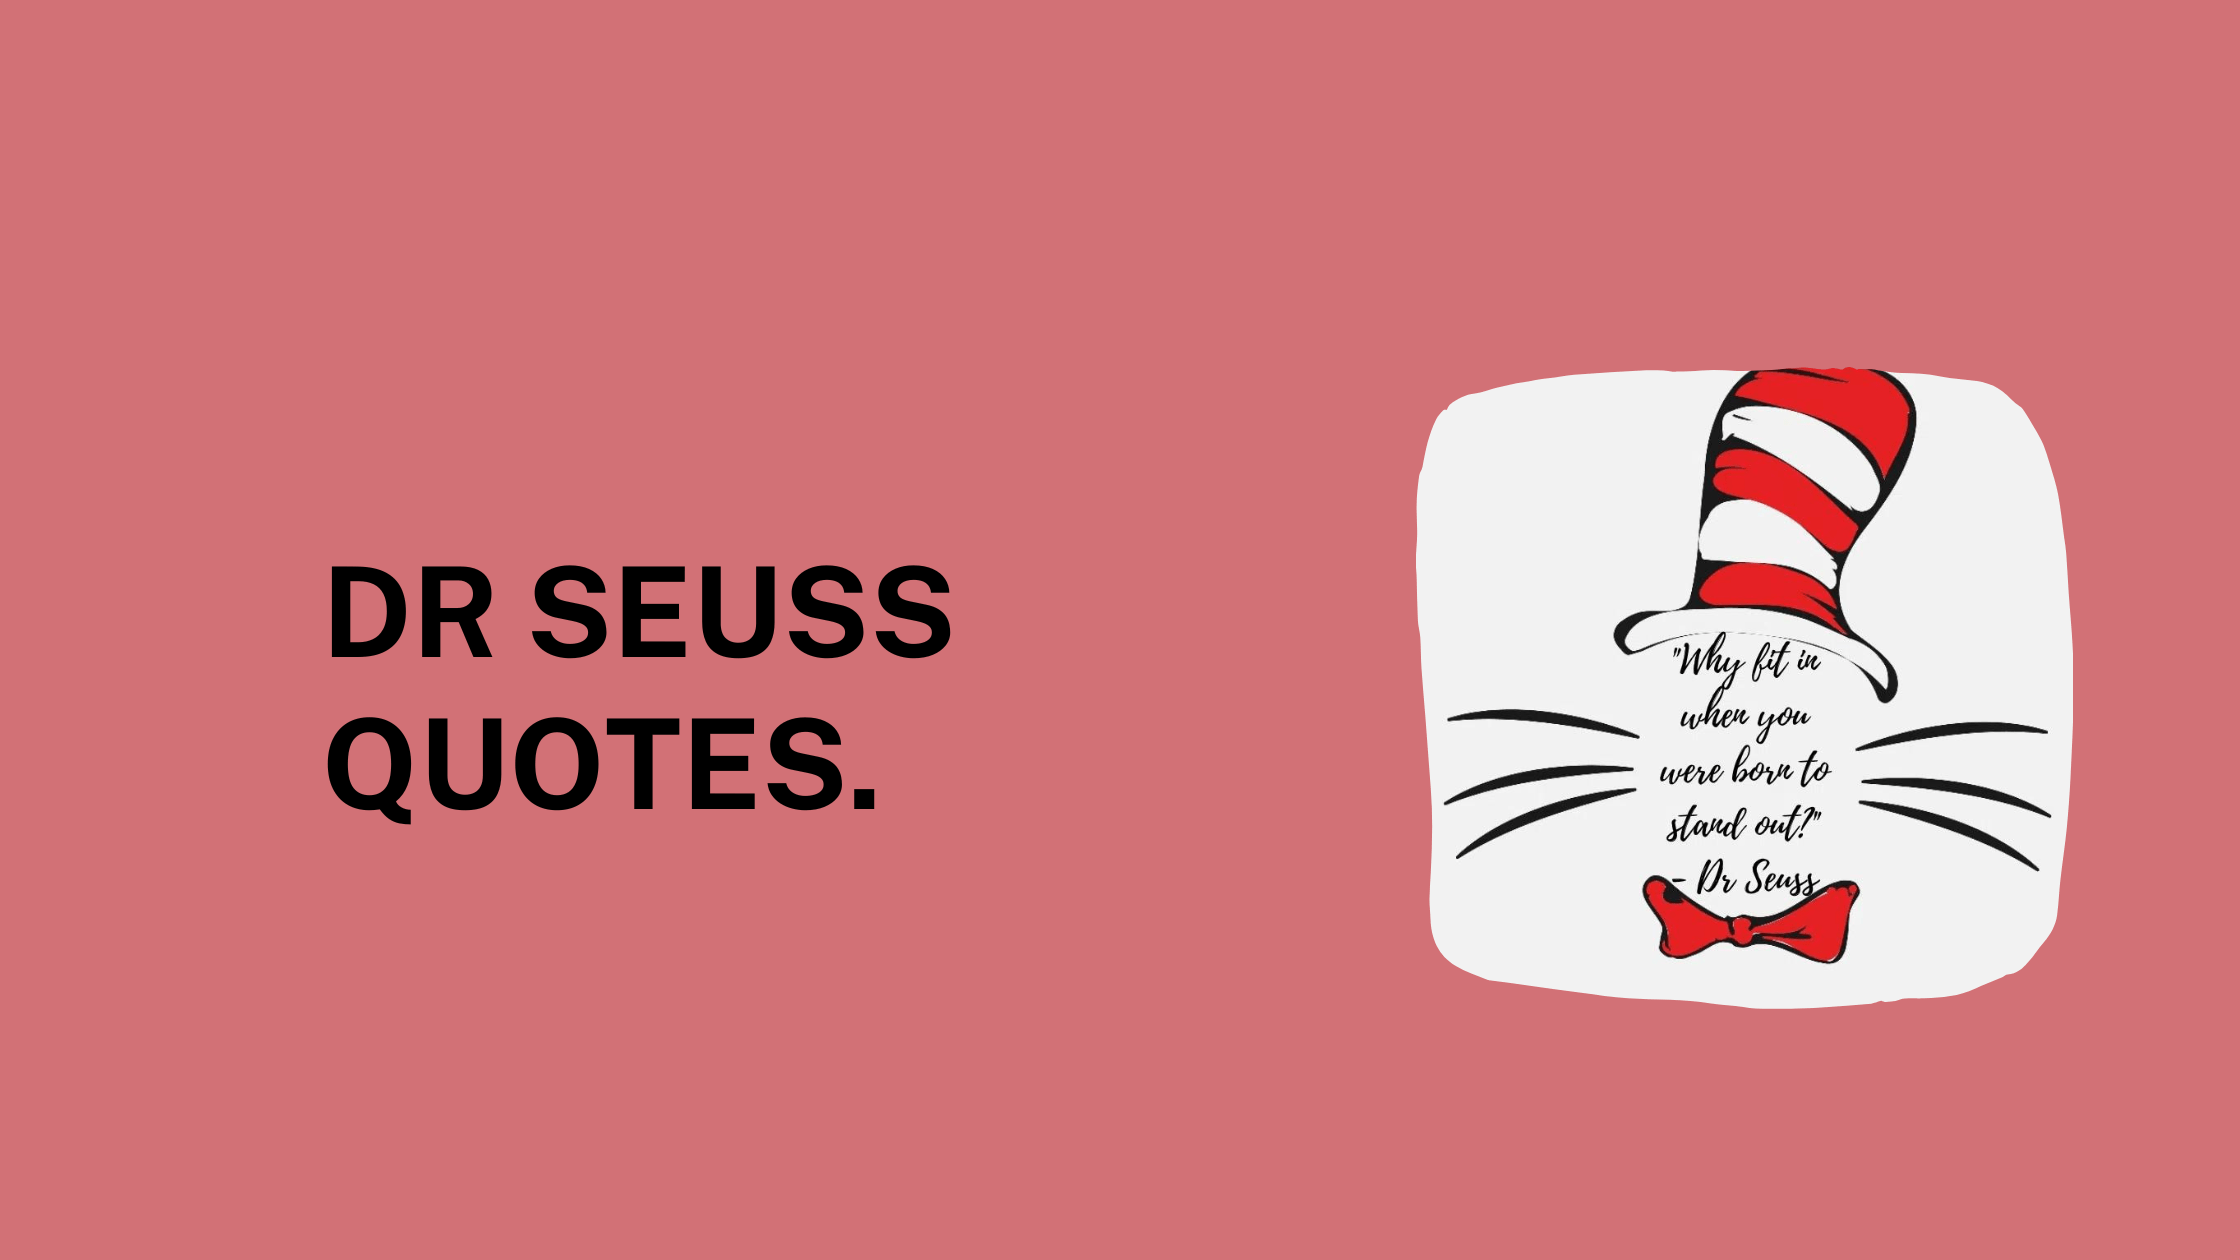 Dr Seuss Quotes for inspiration. - MELTBLOGS